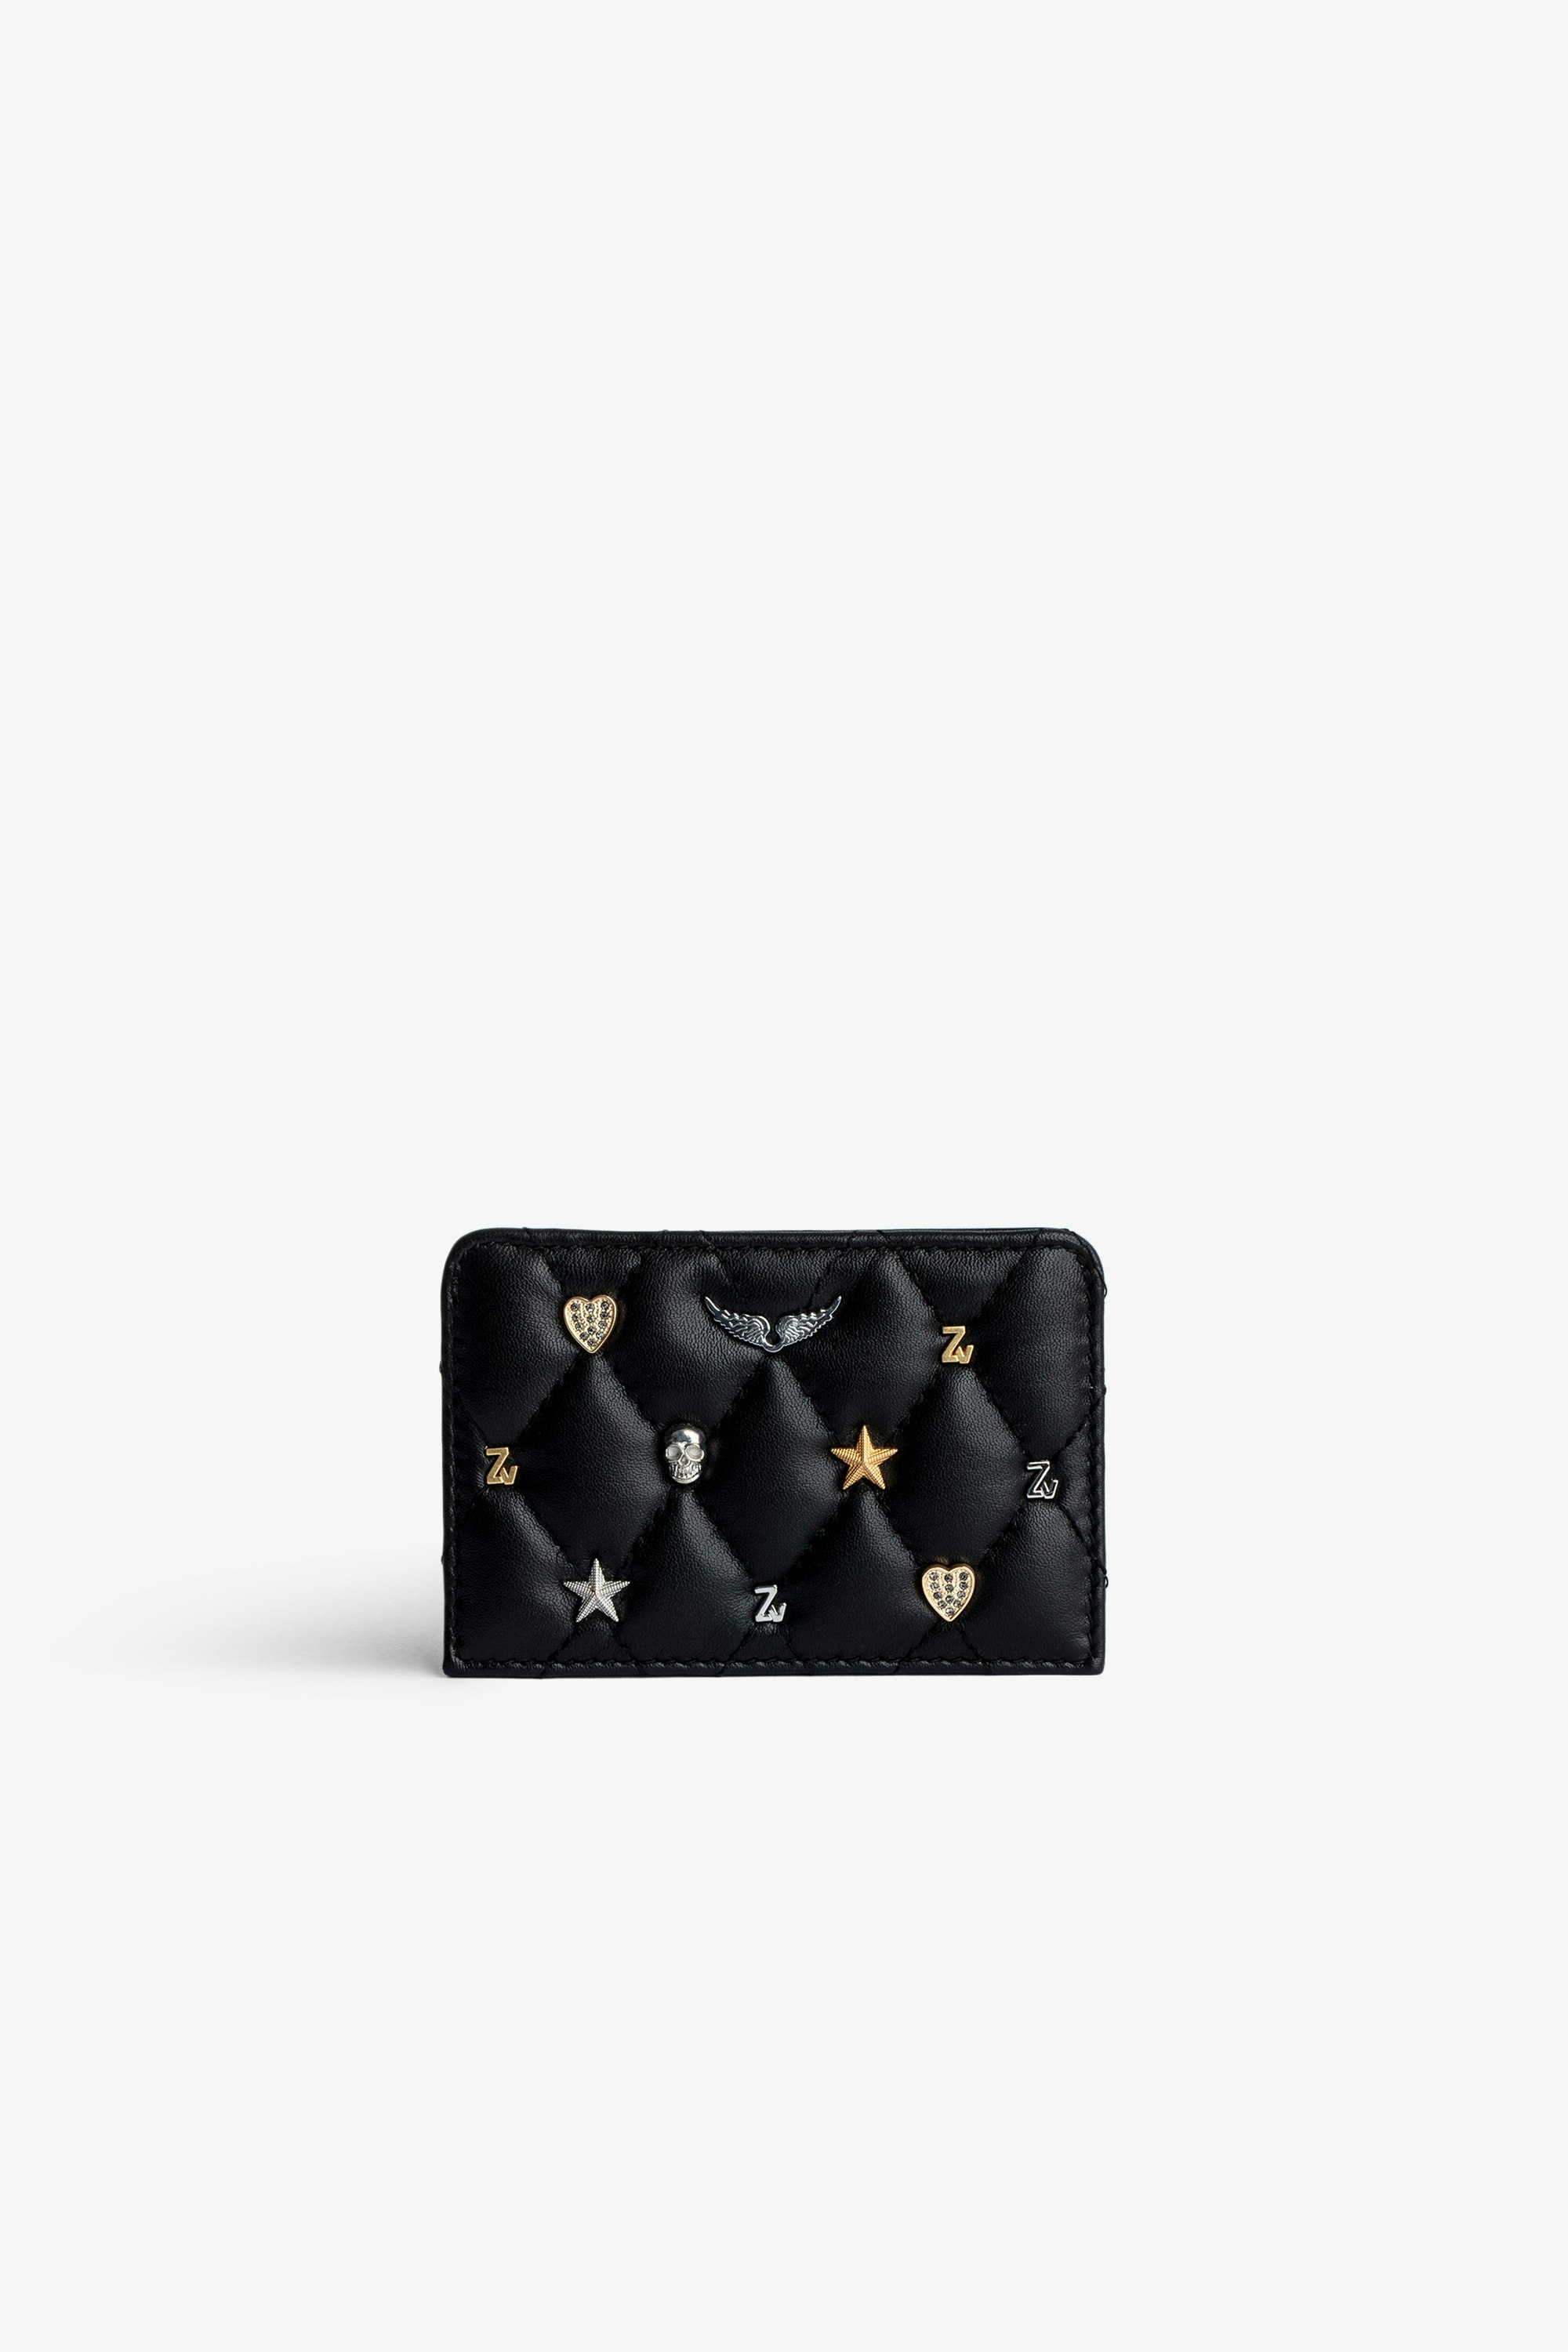 Porte-Cartes ZV Pass - Porte-Cartes en cuir matelassé noir orné de charms argentés et dorés.